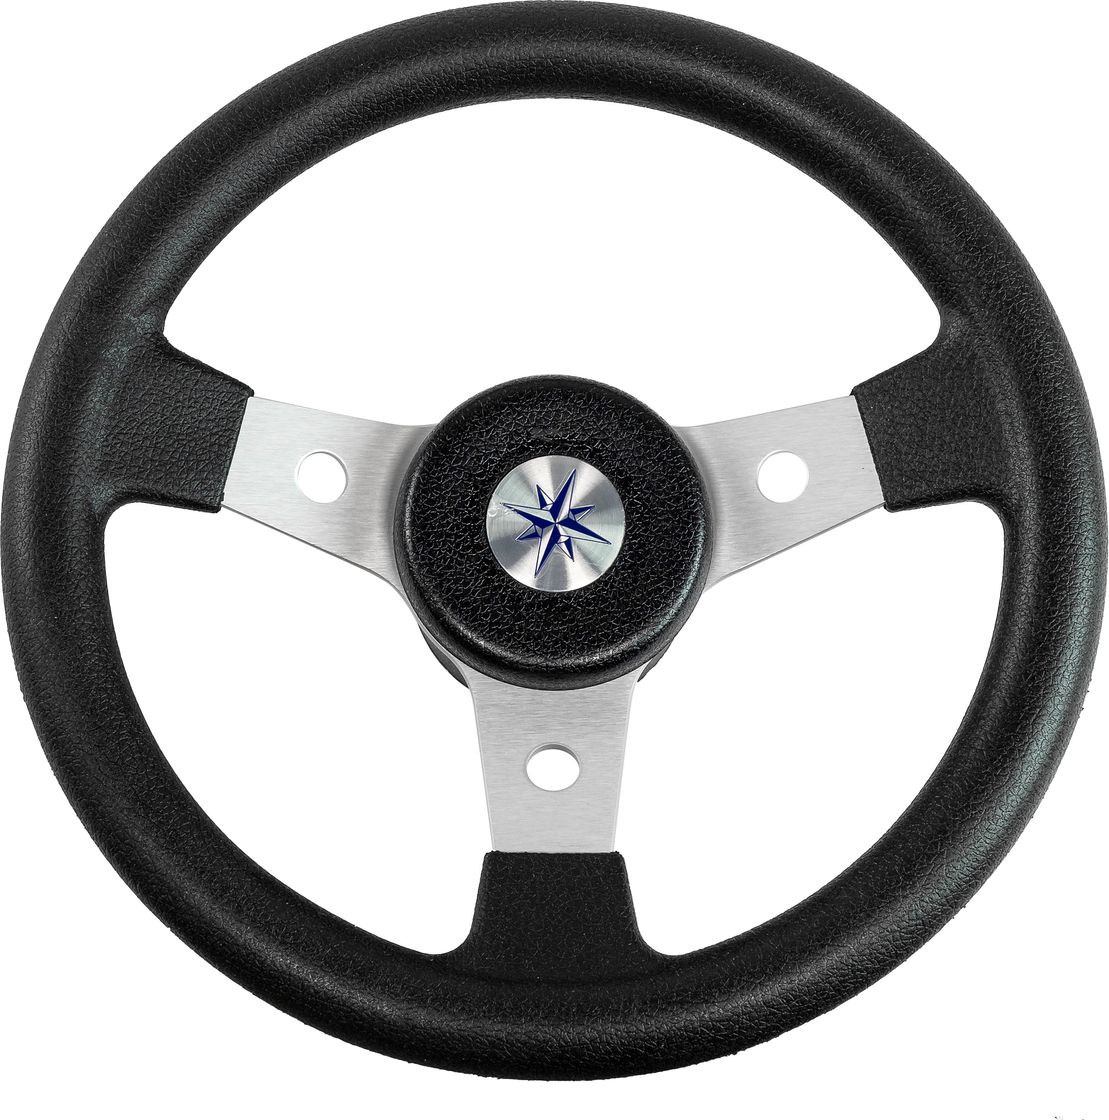 Рулевое колесо DELFINO обод черный,спицы серебряные д. 310 мм VN70103-01 рулевое колесо evolution обод с серебристыми вставками more 10016467